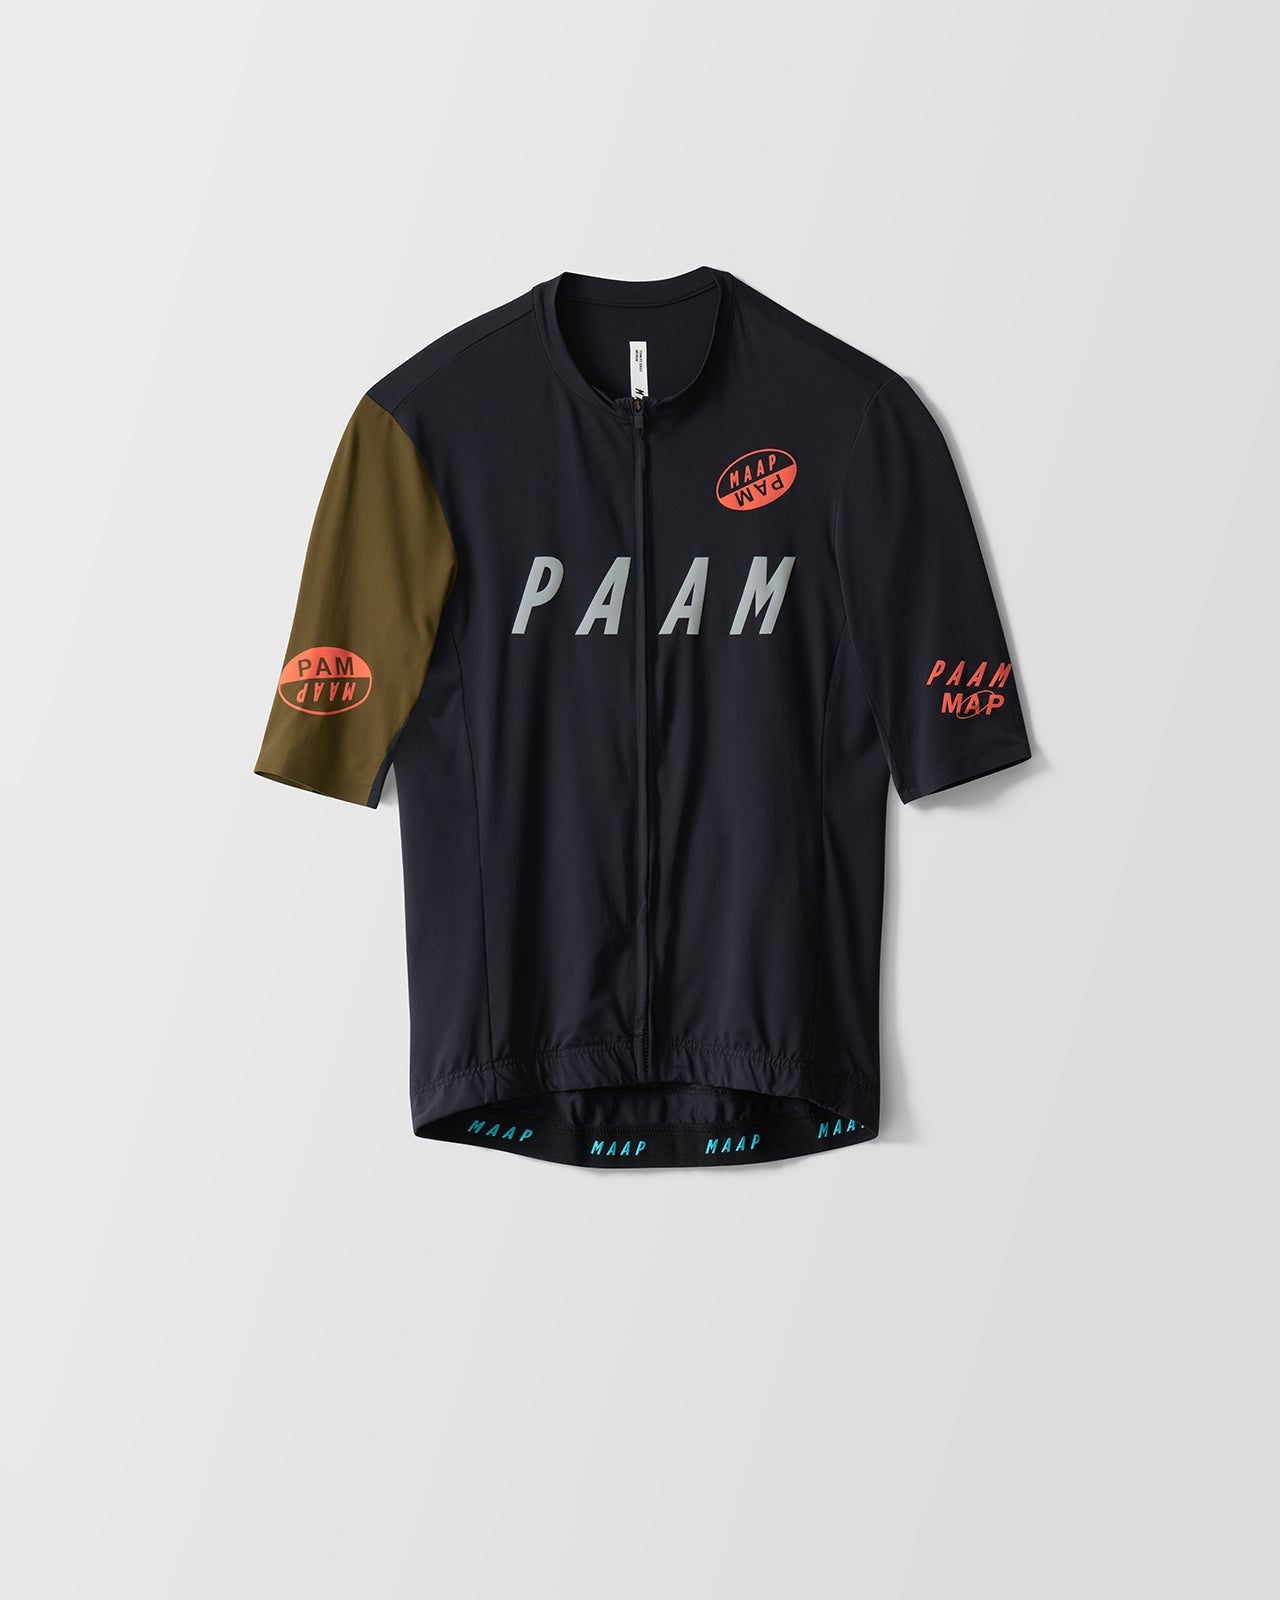 MAAP X PAM Team Jersey - MAAP Cycling Apparel